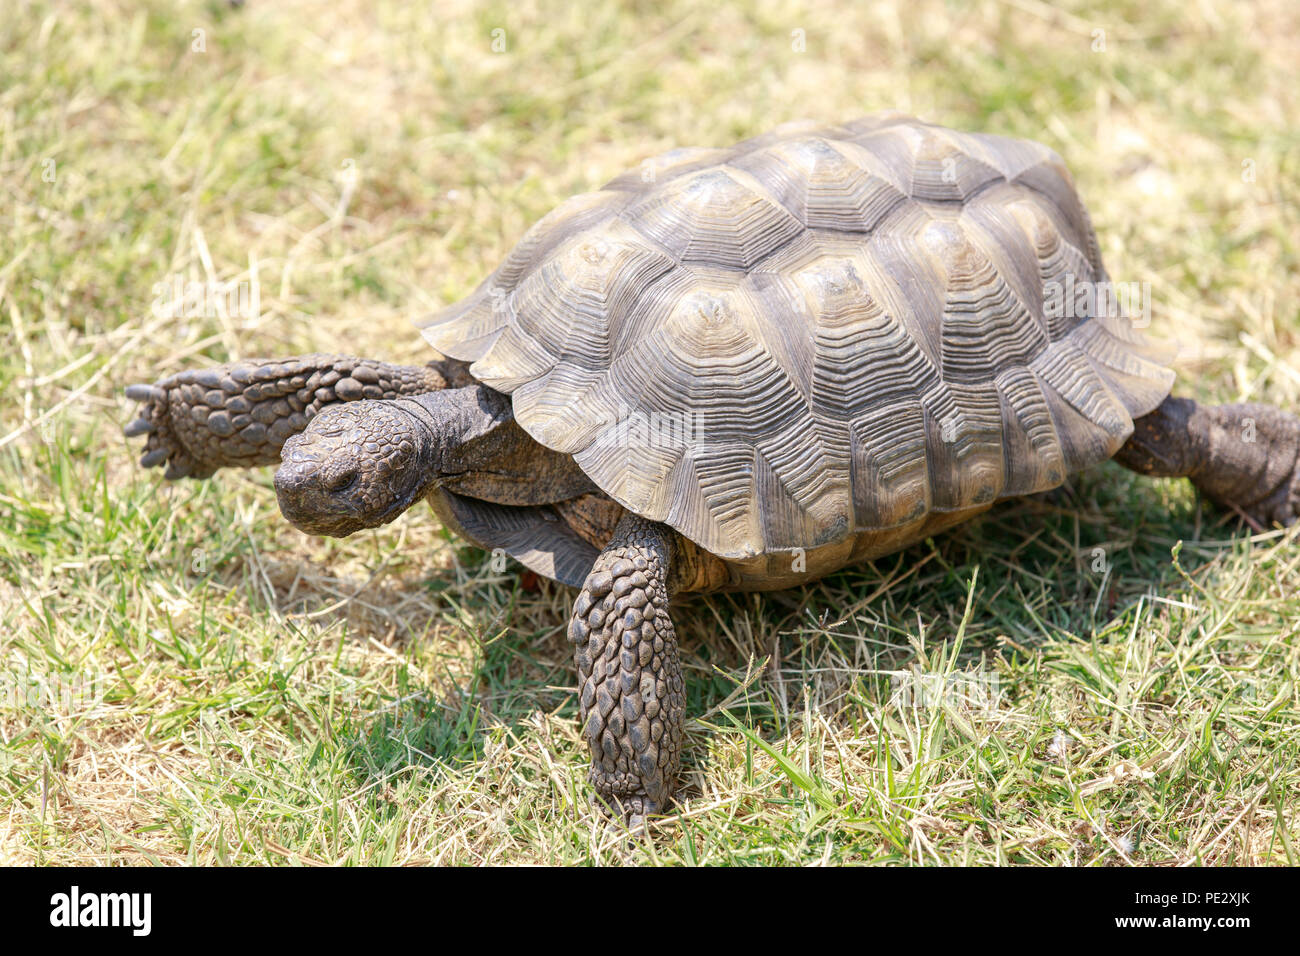 Captive adult male California Desert Tortoise walking on grass. Stock Photo